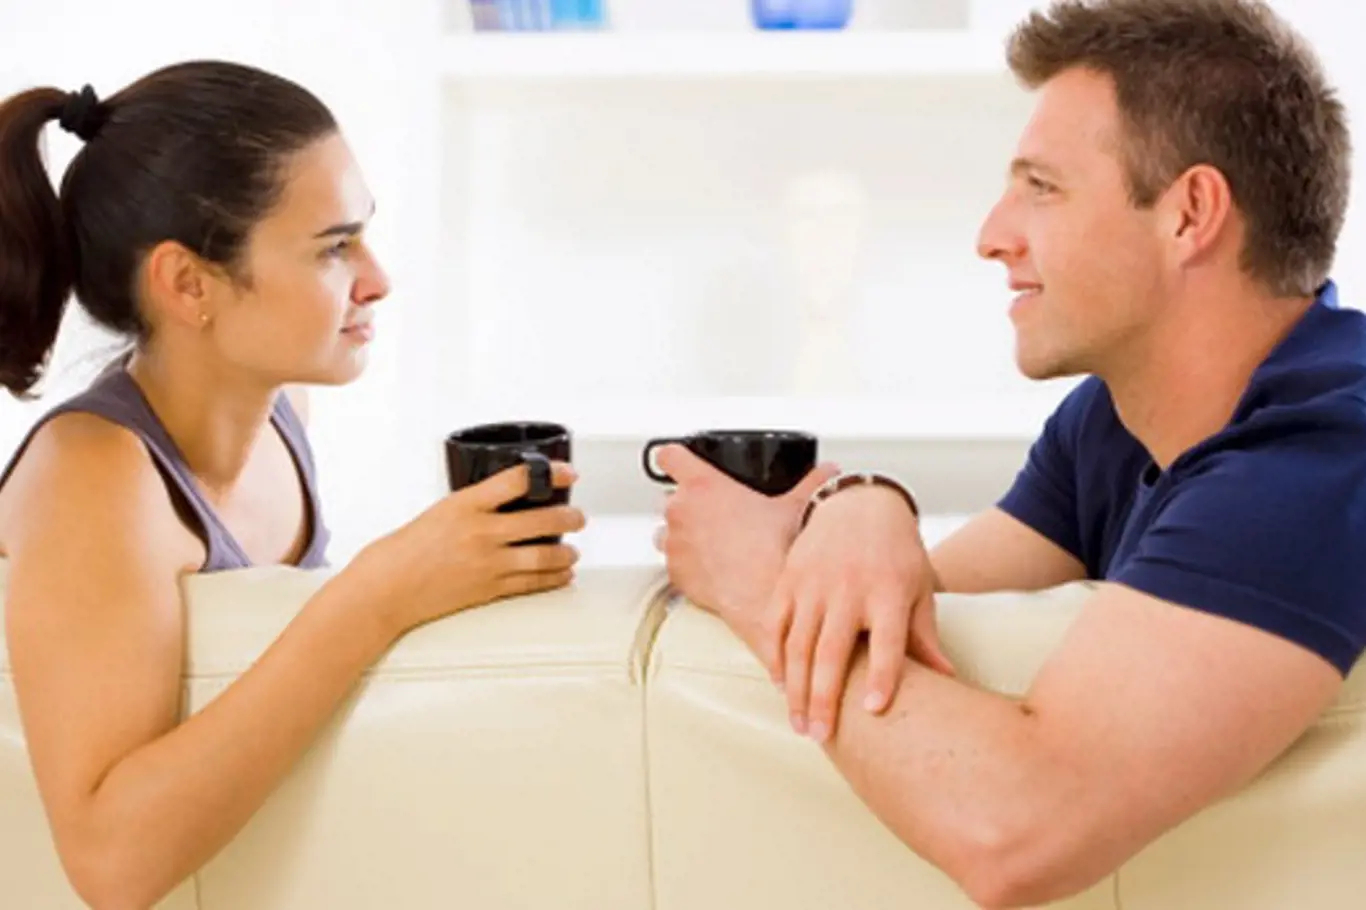 VY a ON: 5 témat, která na začátku vztahu nevytahujte